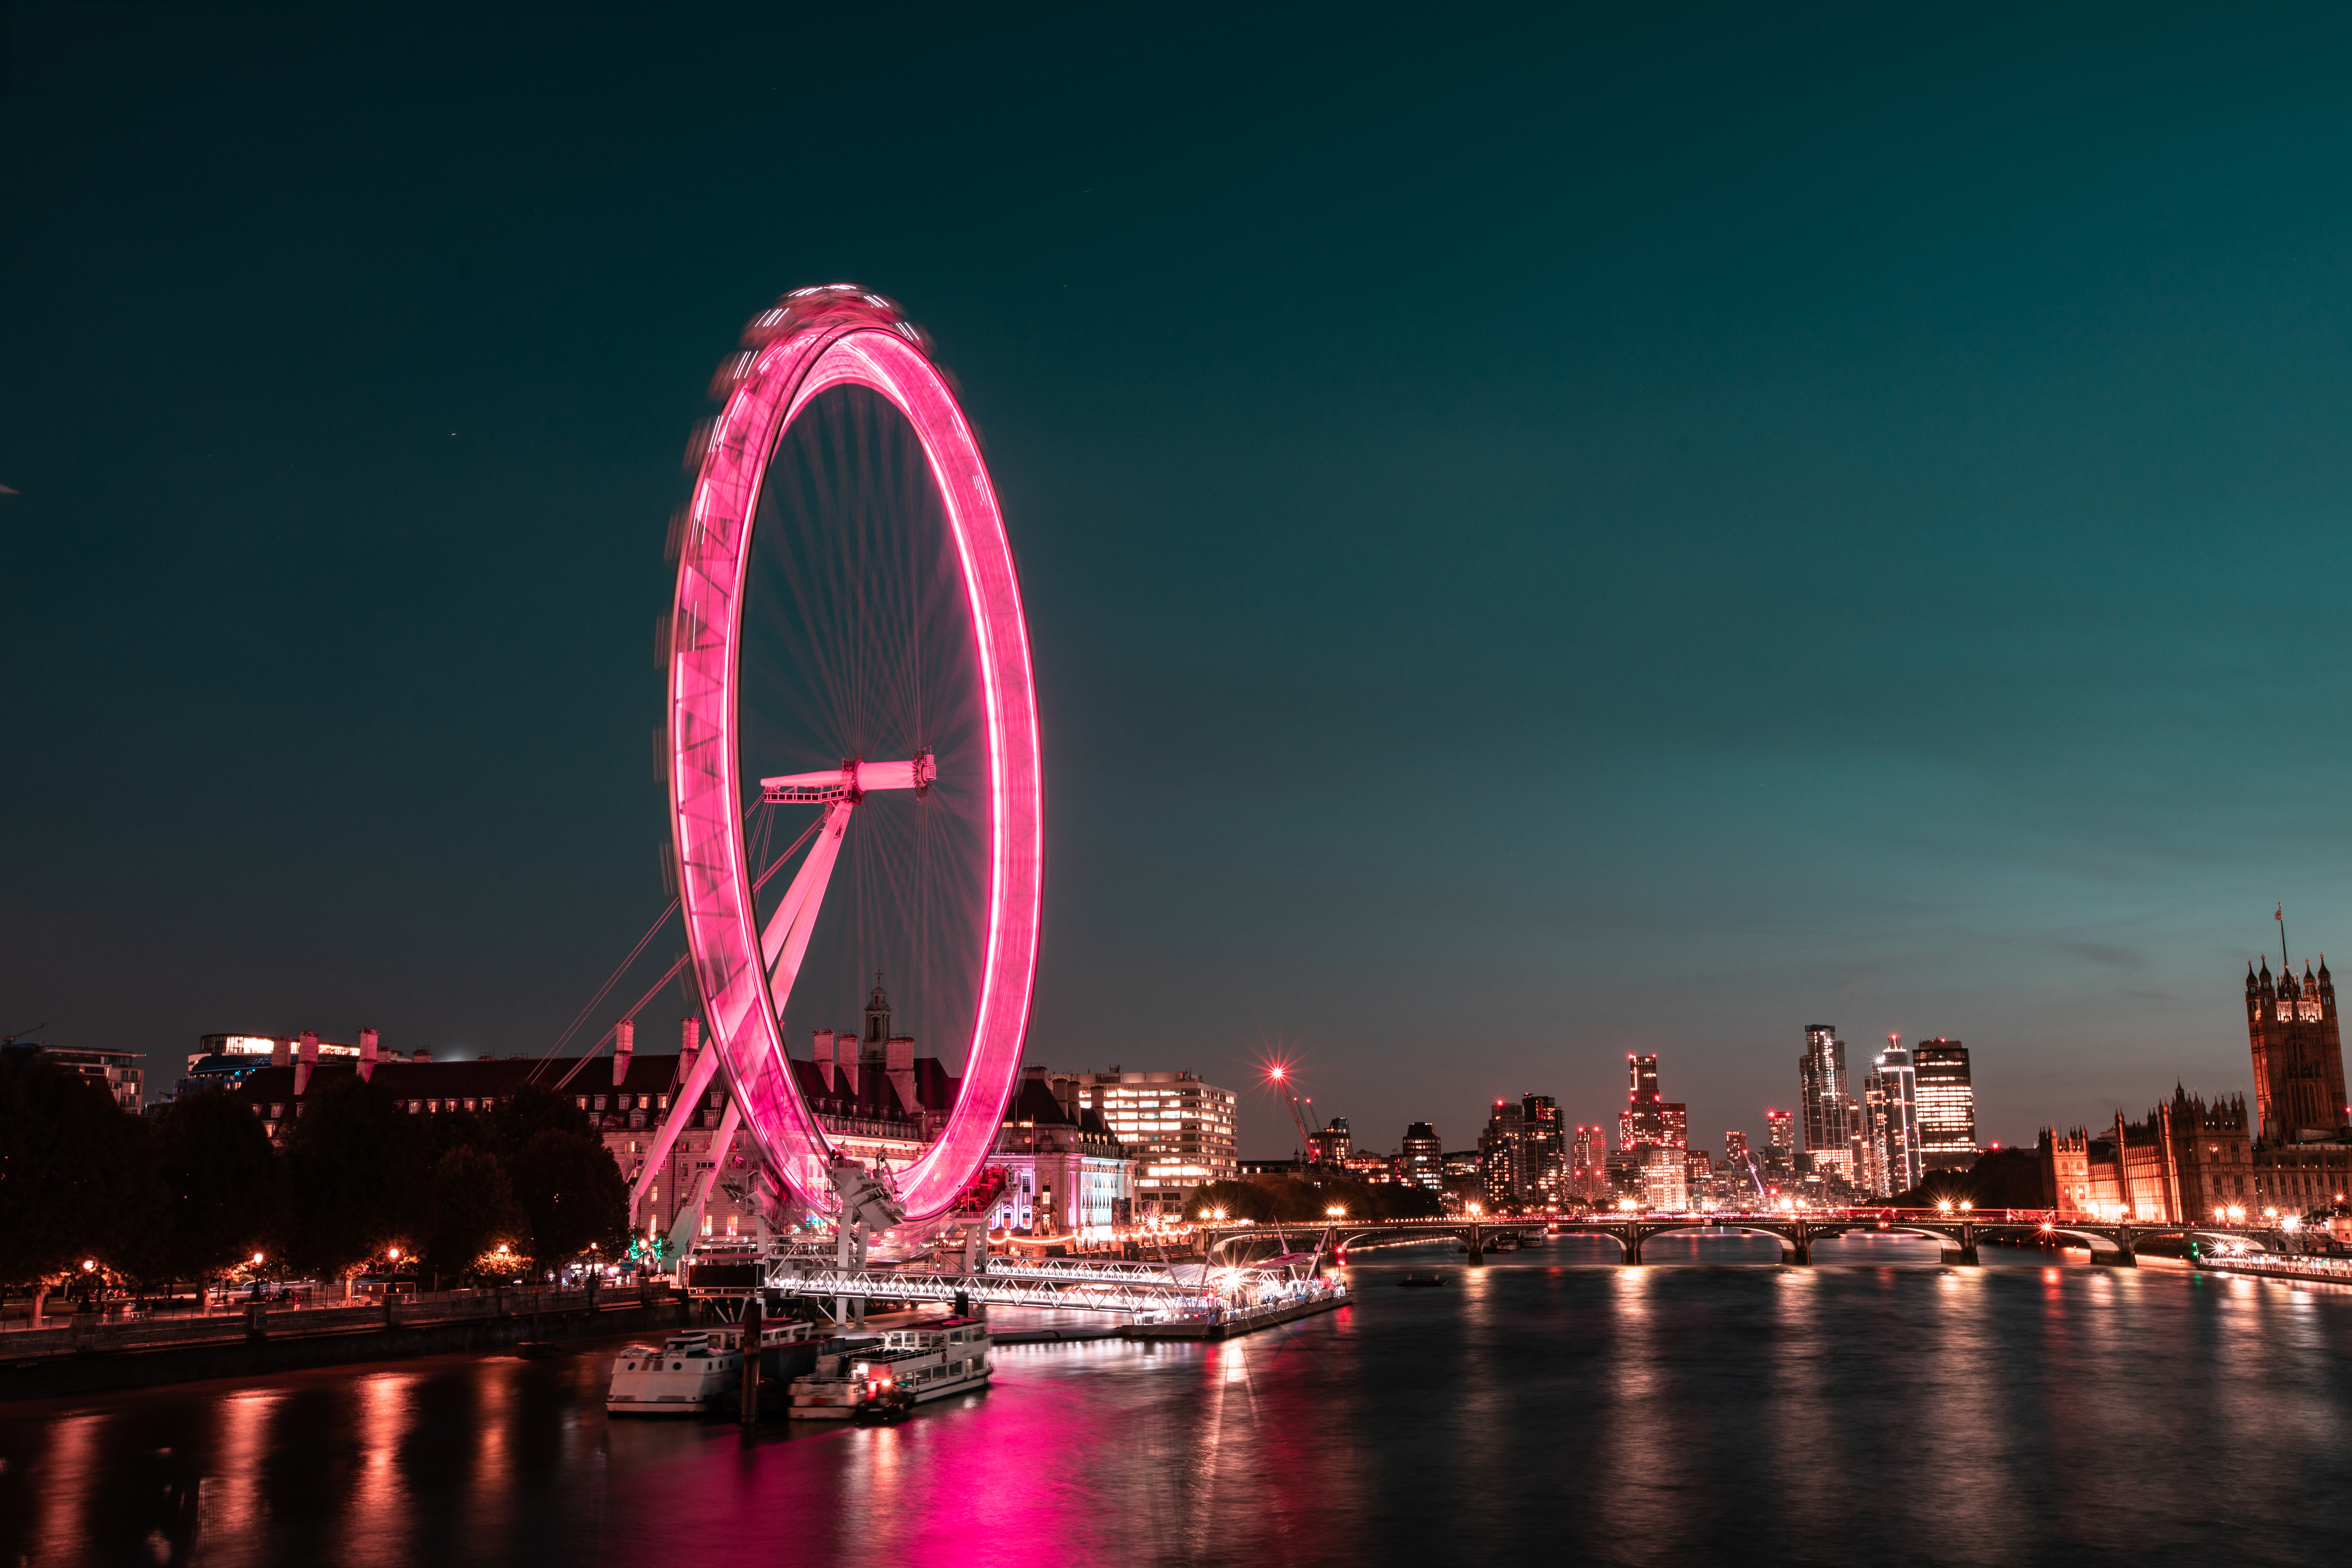 London Eye lit up at night